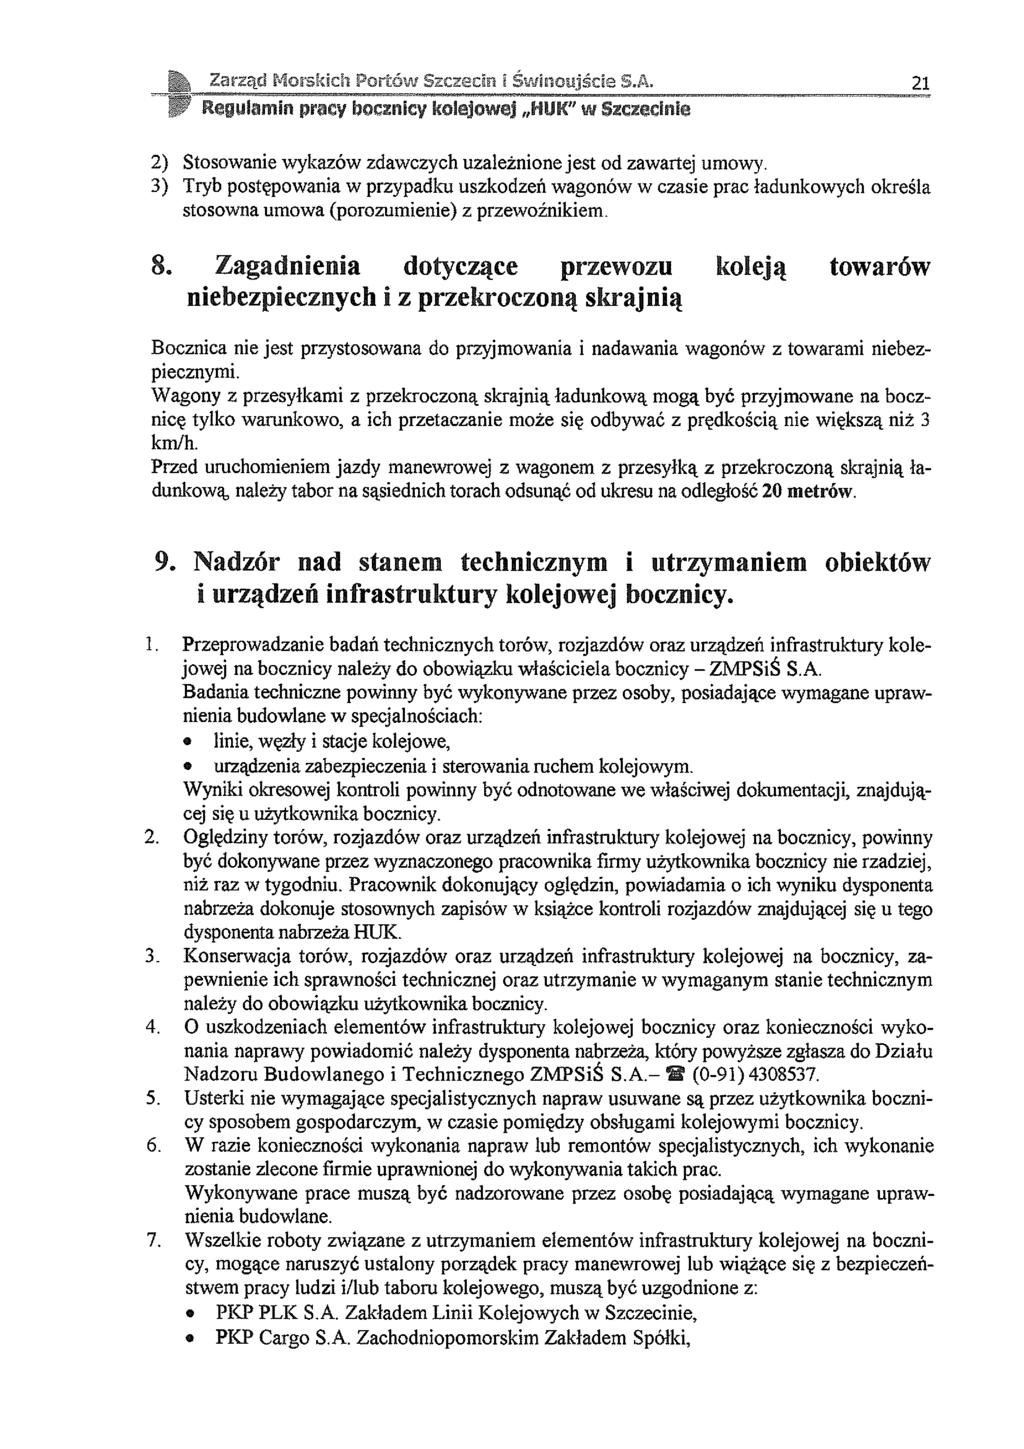 Narząd Morskich Portów Szczecie i Świnoujście S.A, 21 Regulamin prac? bocznicy kolejowej HUK" w iz c z id n ls 2) Stosowa wykazów zdawczych uzależnione jest od zawartej umowy.